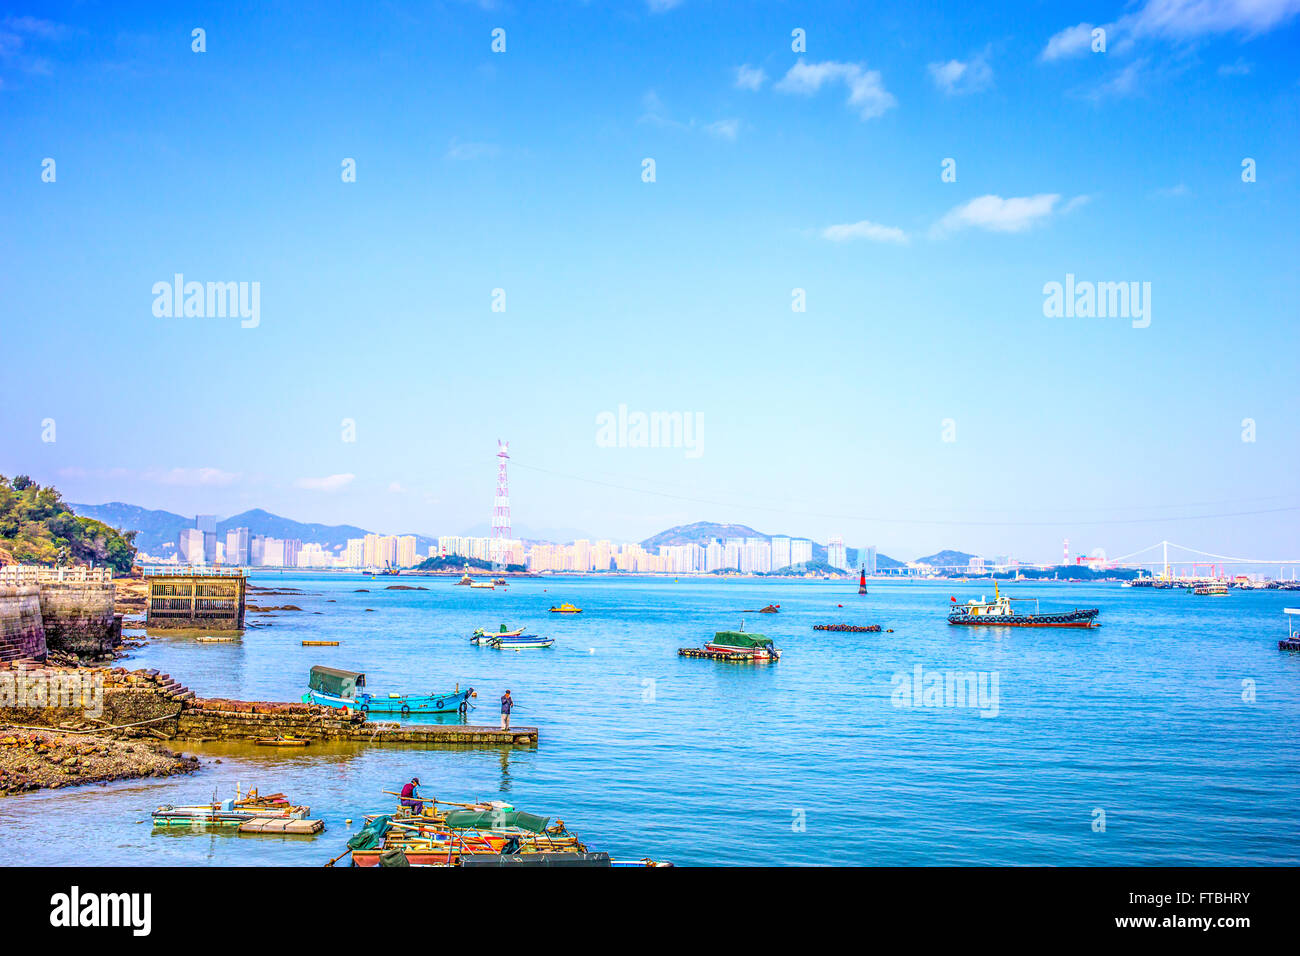 Xiamen tourism scenery Stock Photo